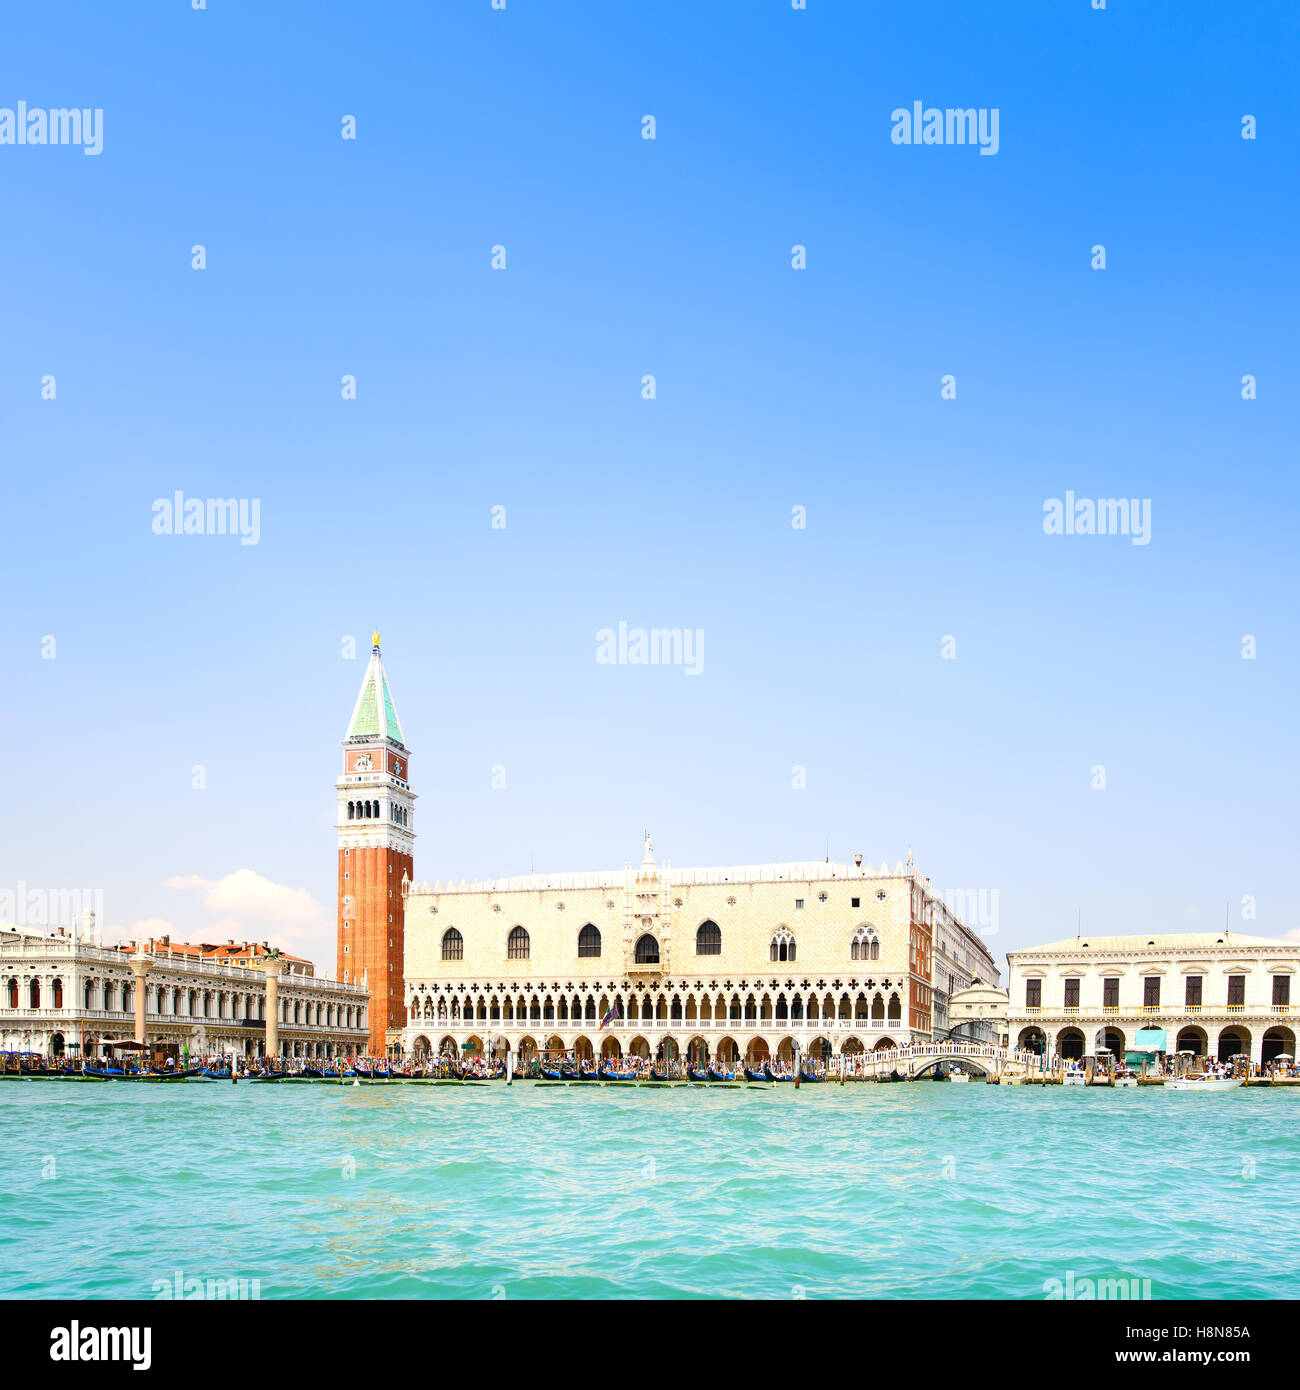 Vue de Venise, vue à partir de la mer de la Piazza San Marco ou Place St Marc, Le Campanile et le Palais des Doges ou Ducale. L'Italie, l'Europe. Banque D'Images